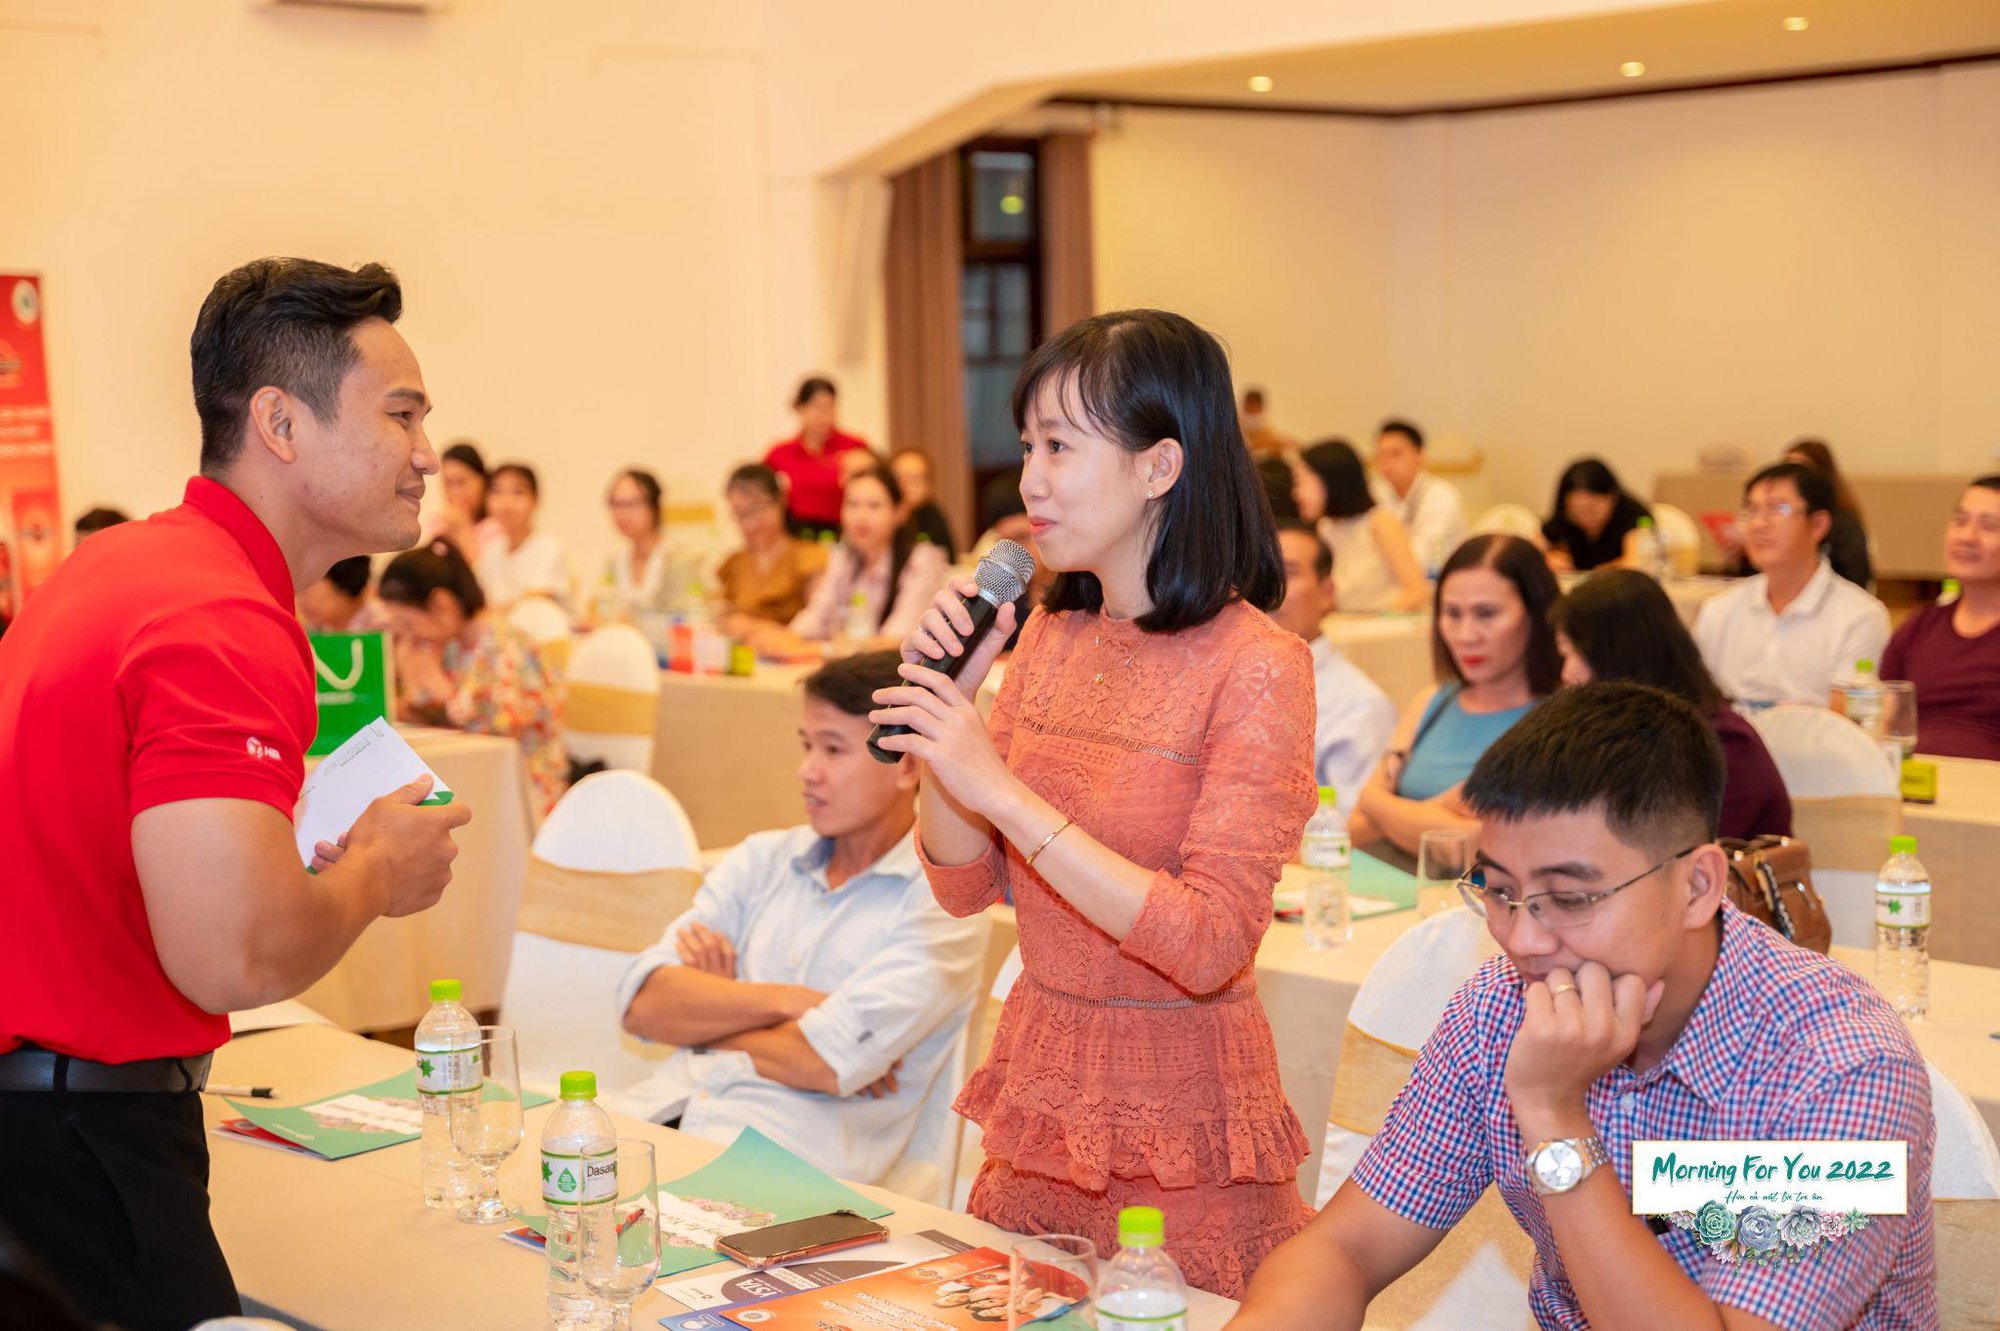 Merap hợp tác với Hội Tai Mũi Họng giúp nâng cao kỹ năng tư vấn bệnh viêm mũi họng cho dược sĩ nhà thuốc - Ảnh 2.